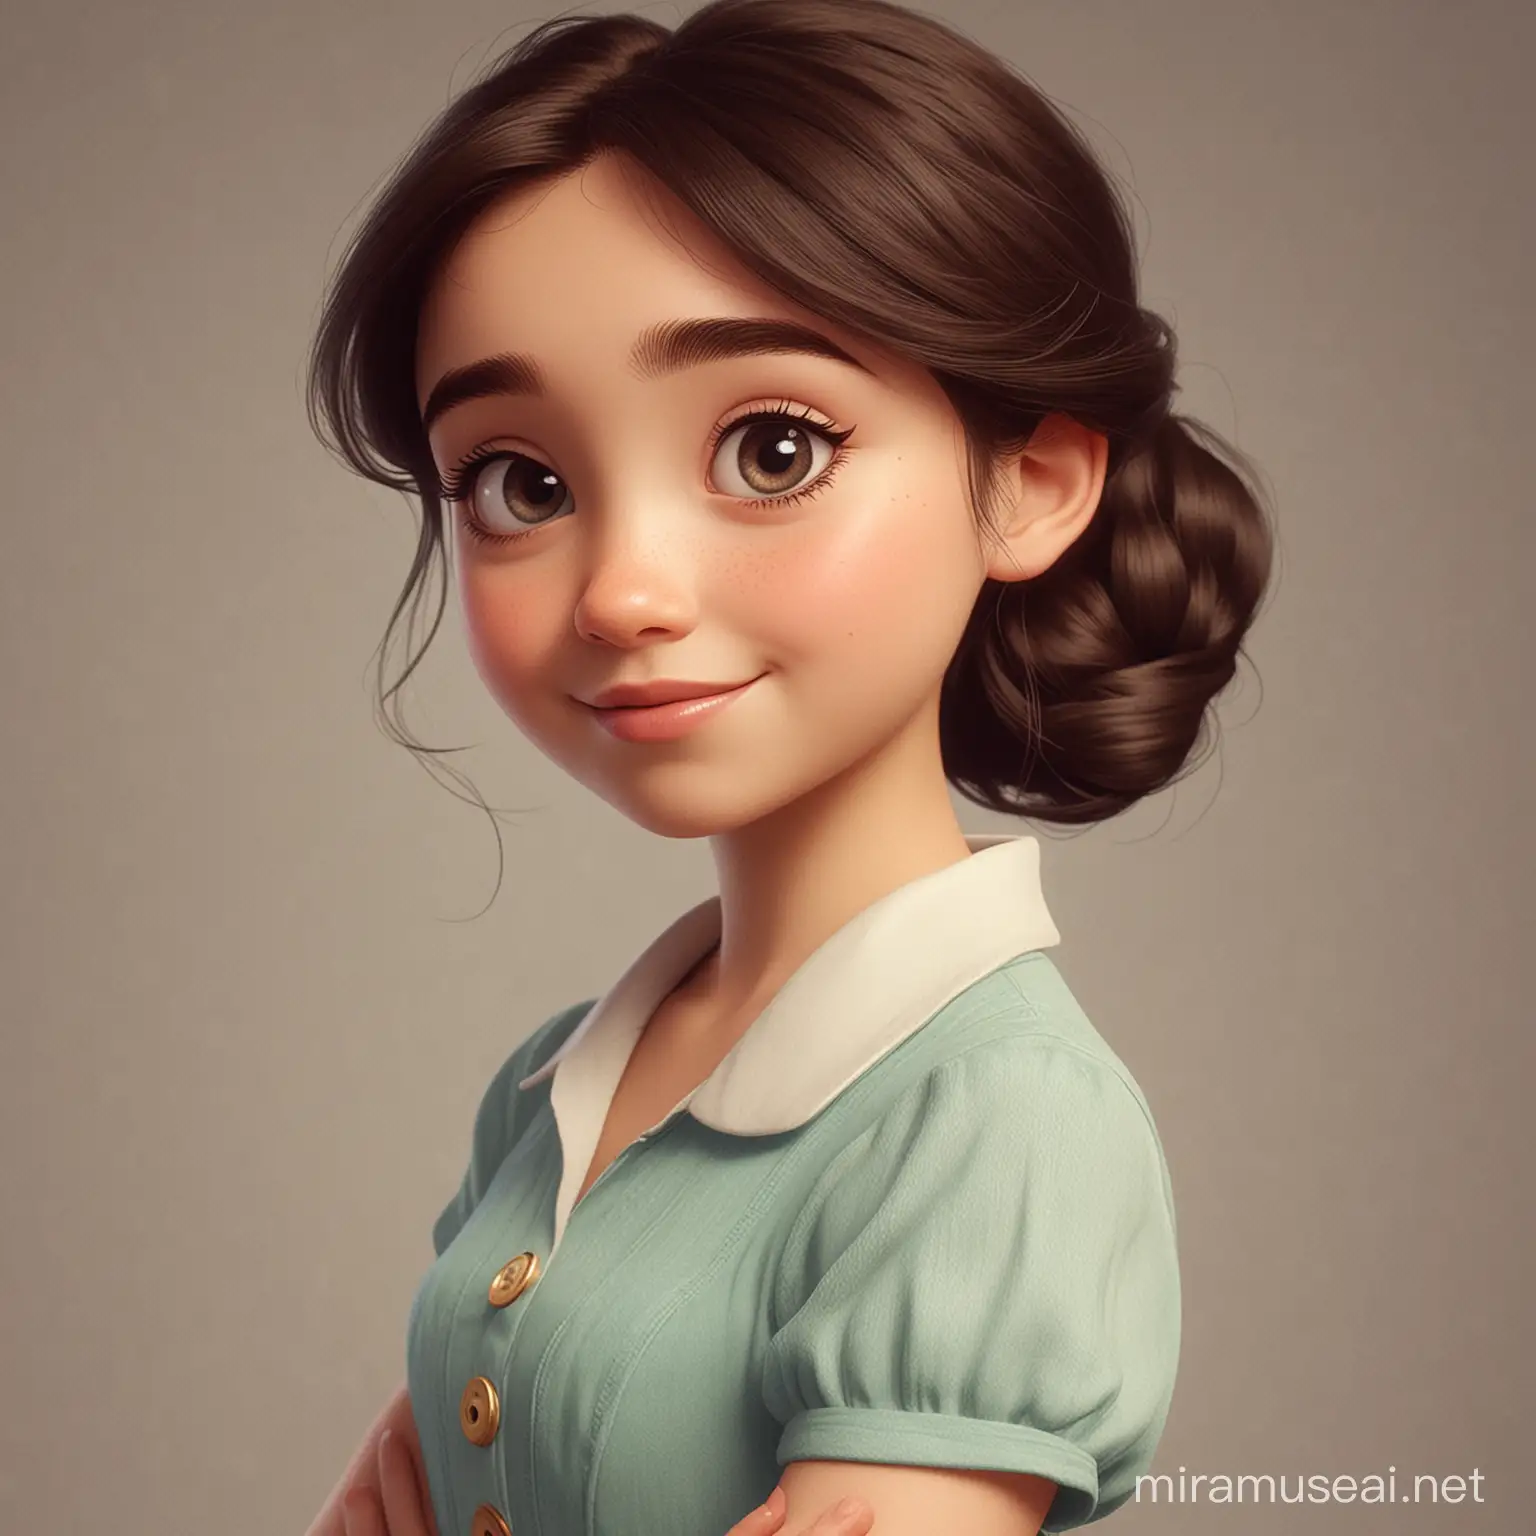 Elder Sister in Vibrant Disney Pixar Style